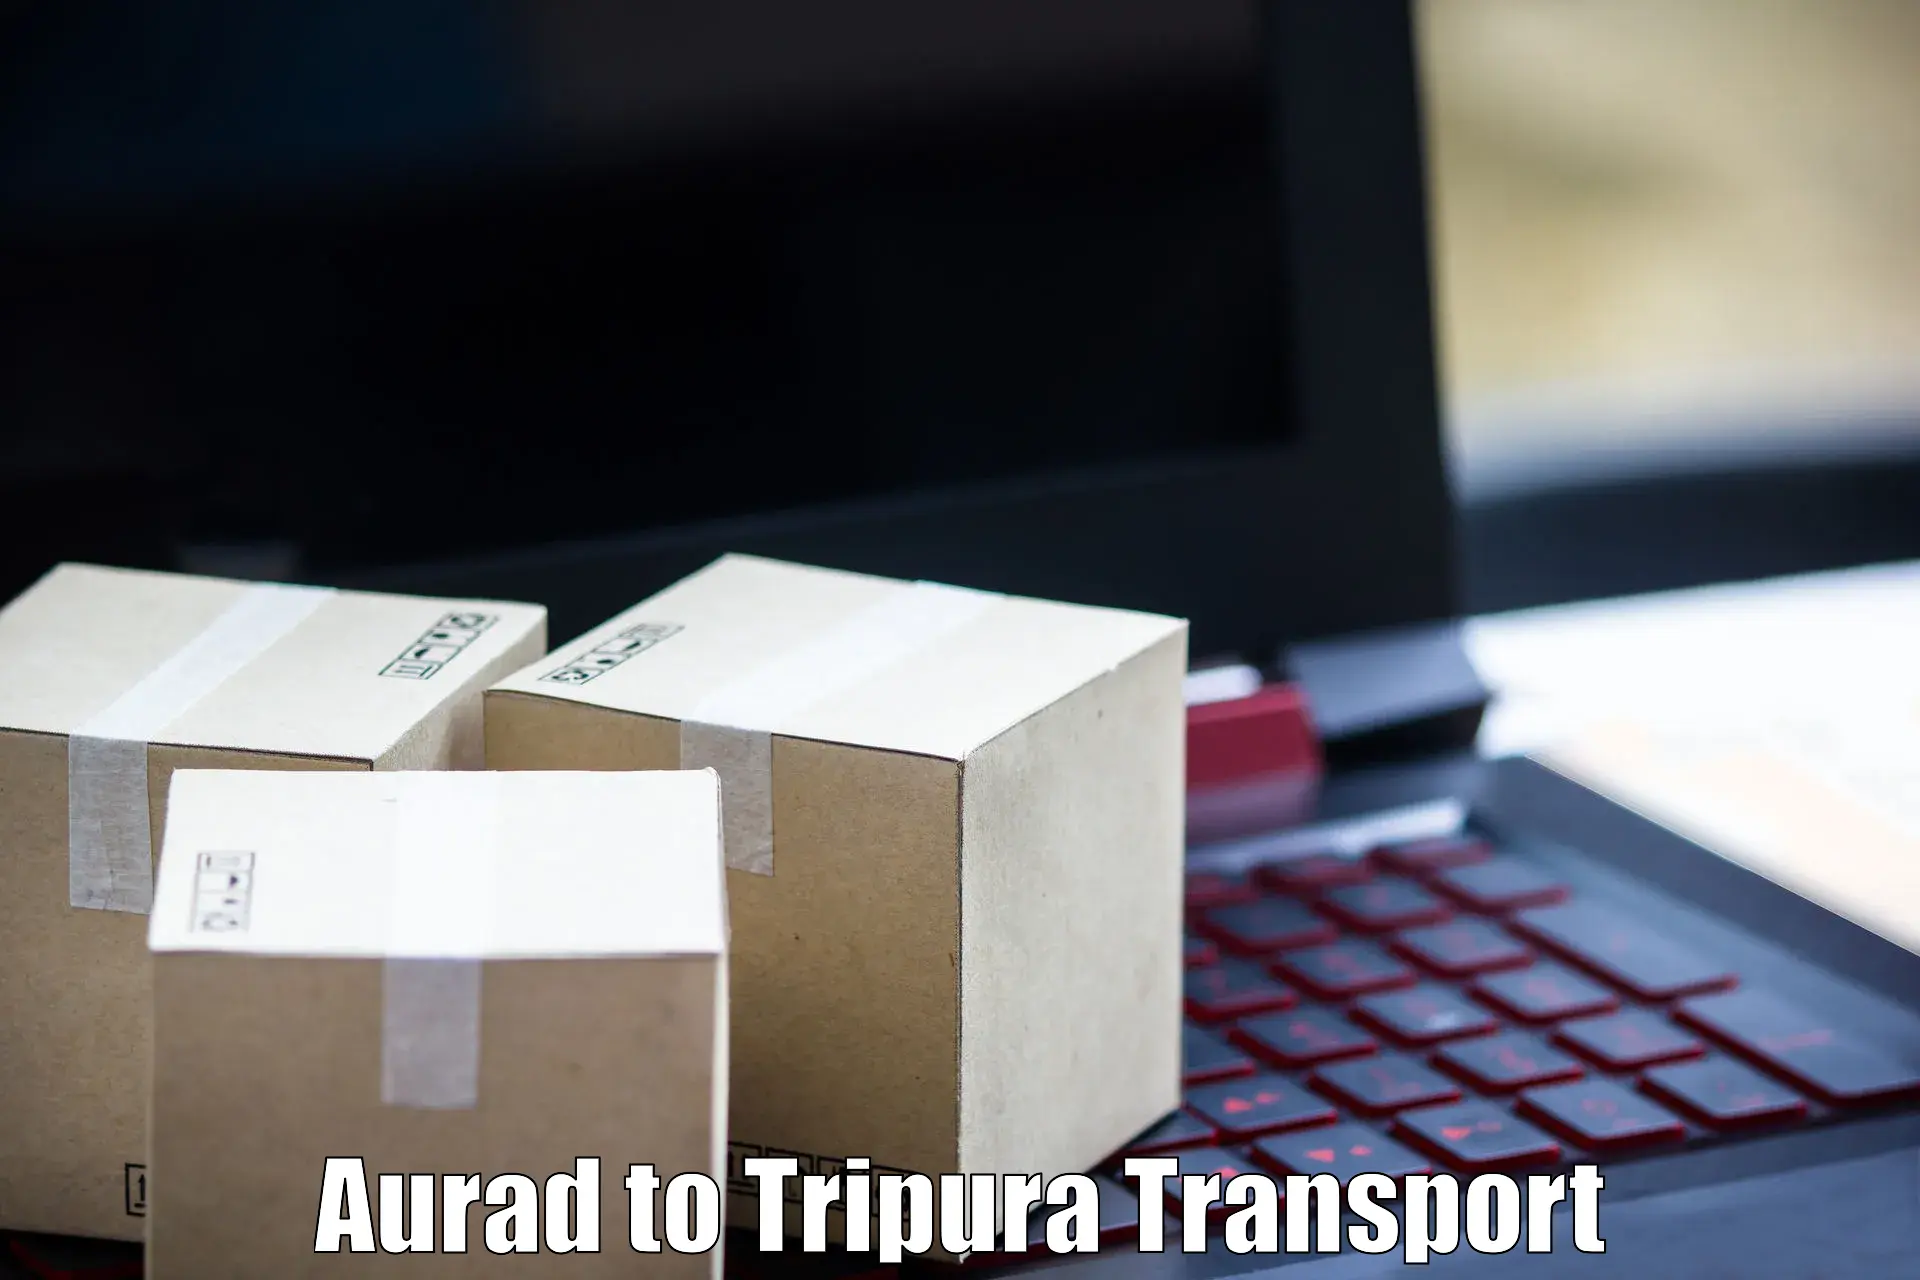 Transportation services Aurad to IIIT Agartala